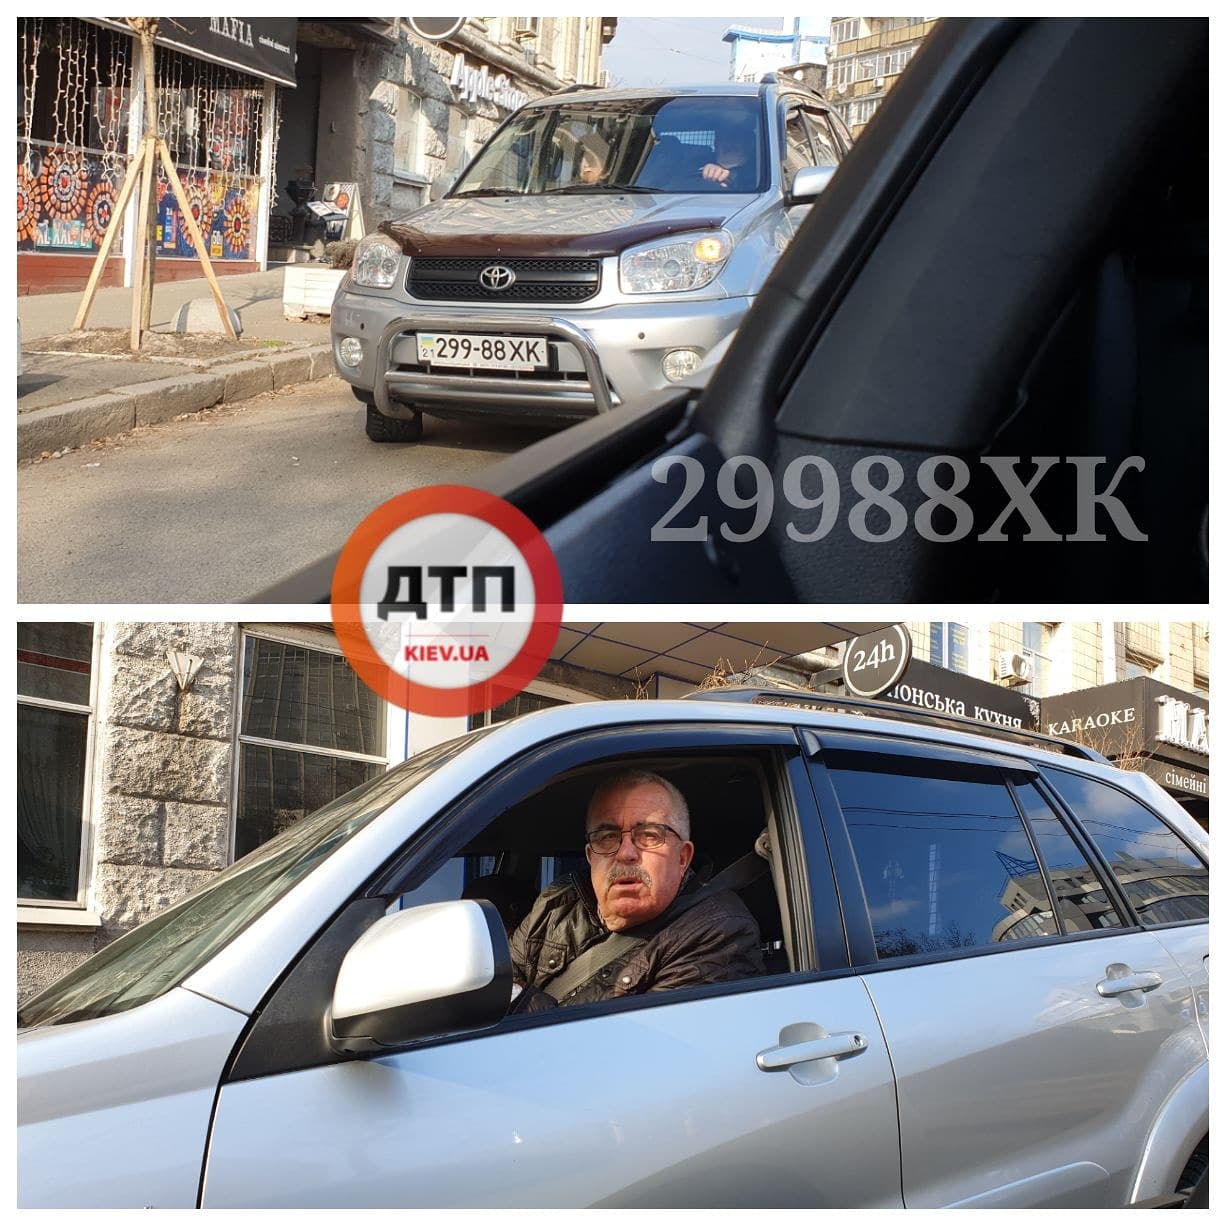 Команда ДТП.Киев работает с нарушителями: в Киеве на улице Артема водитель Toyota настойчиво повернул через двойную сплошную. Видео